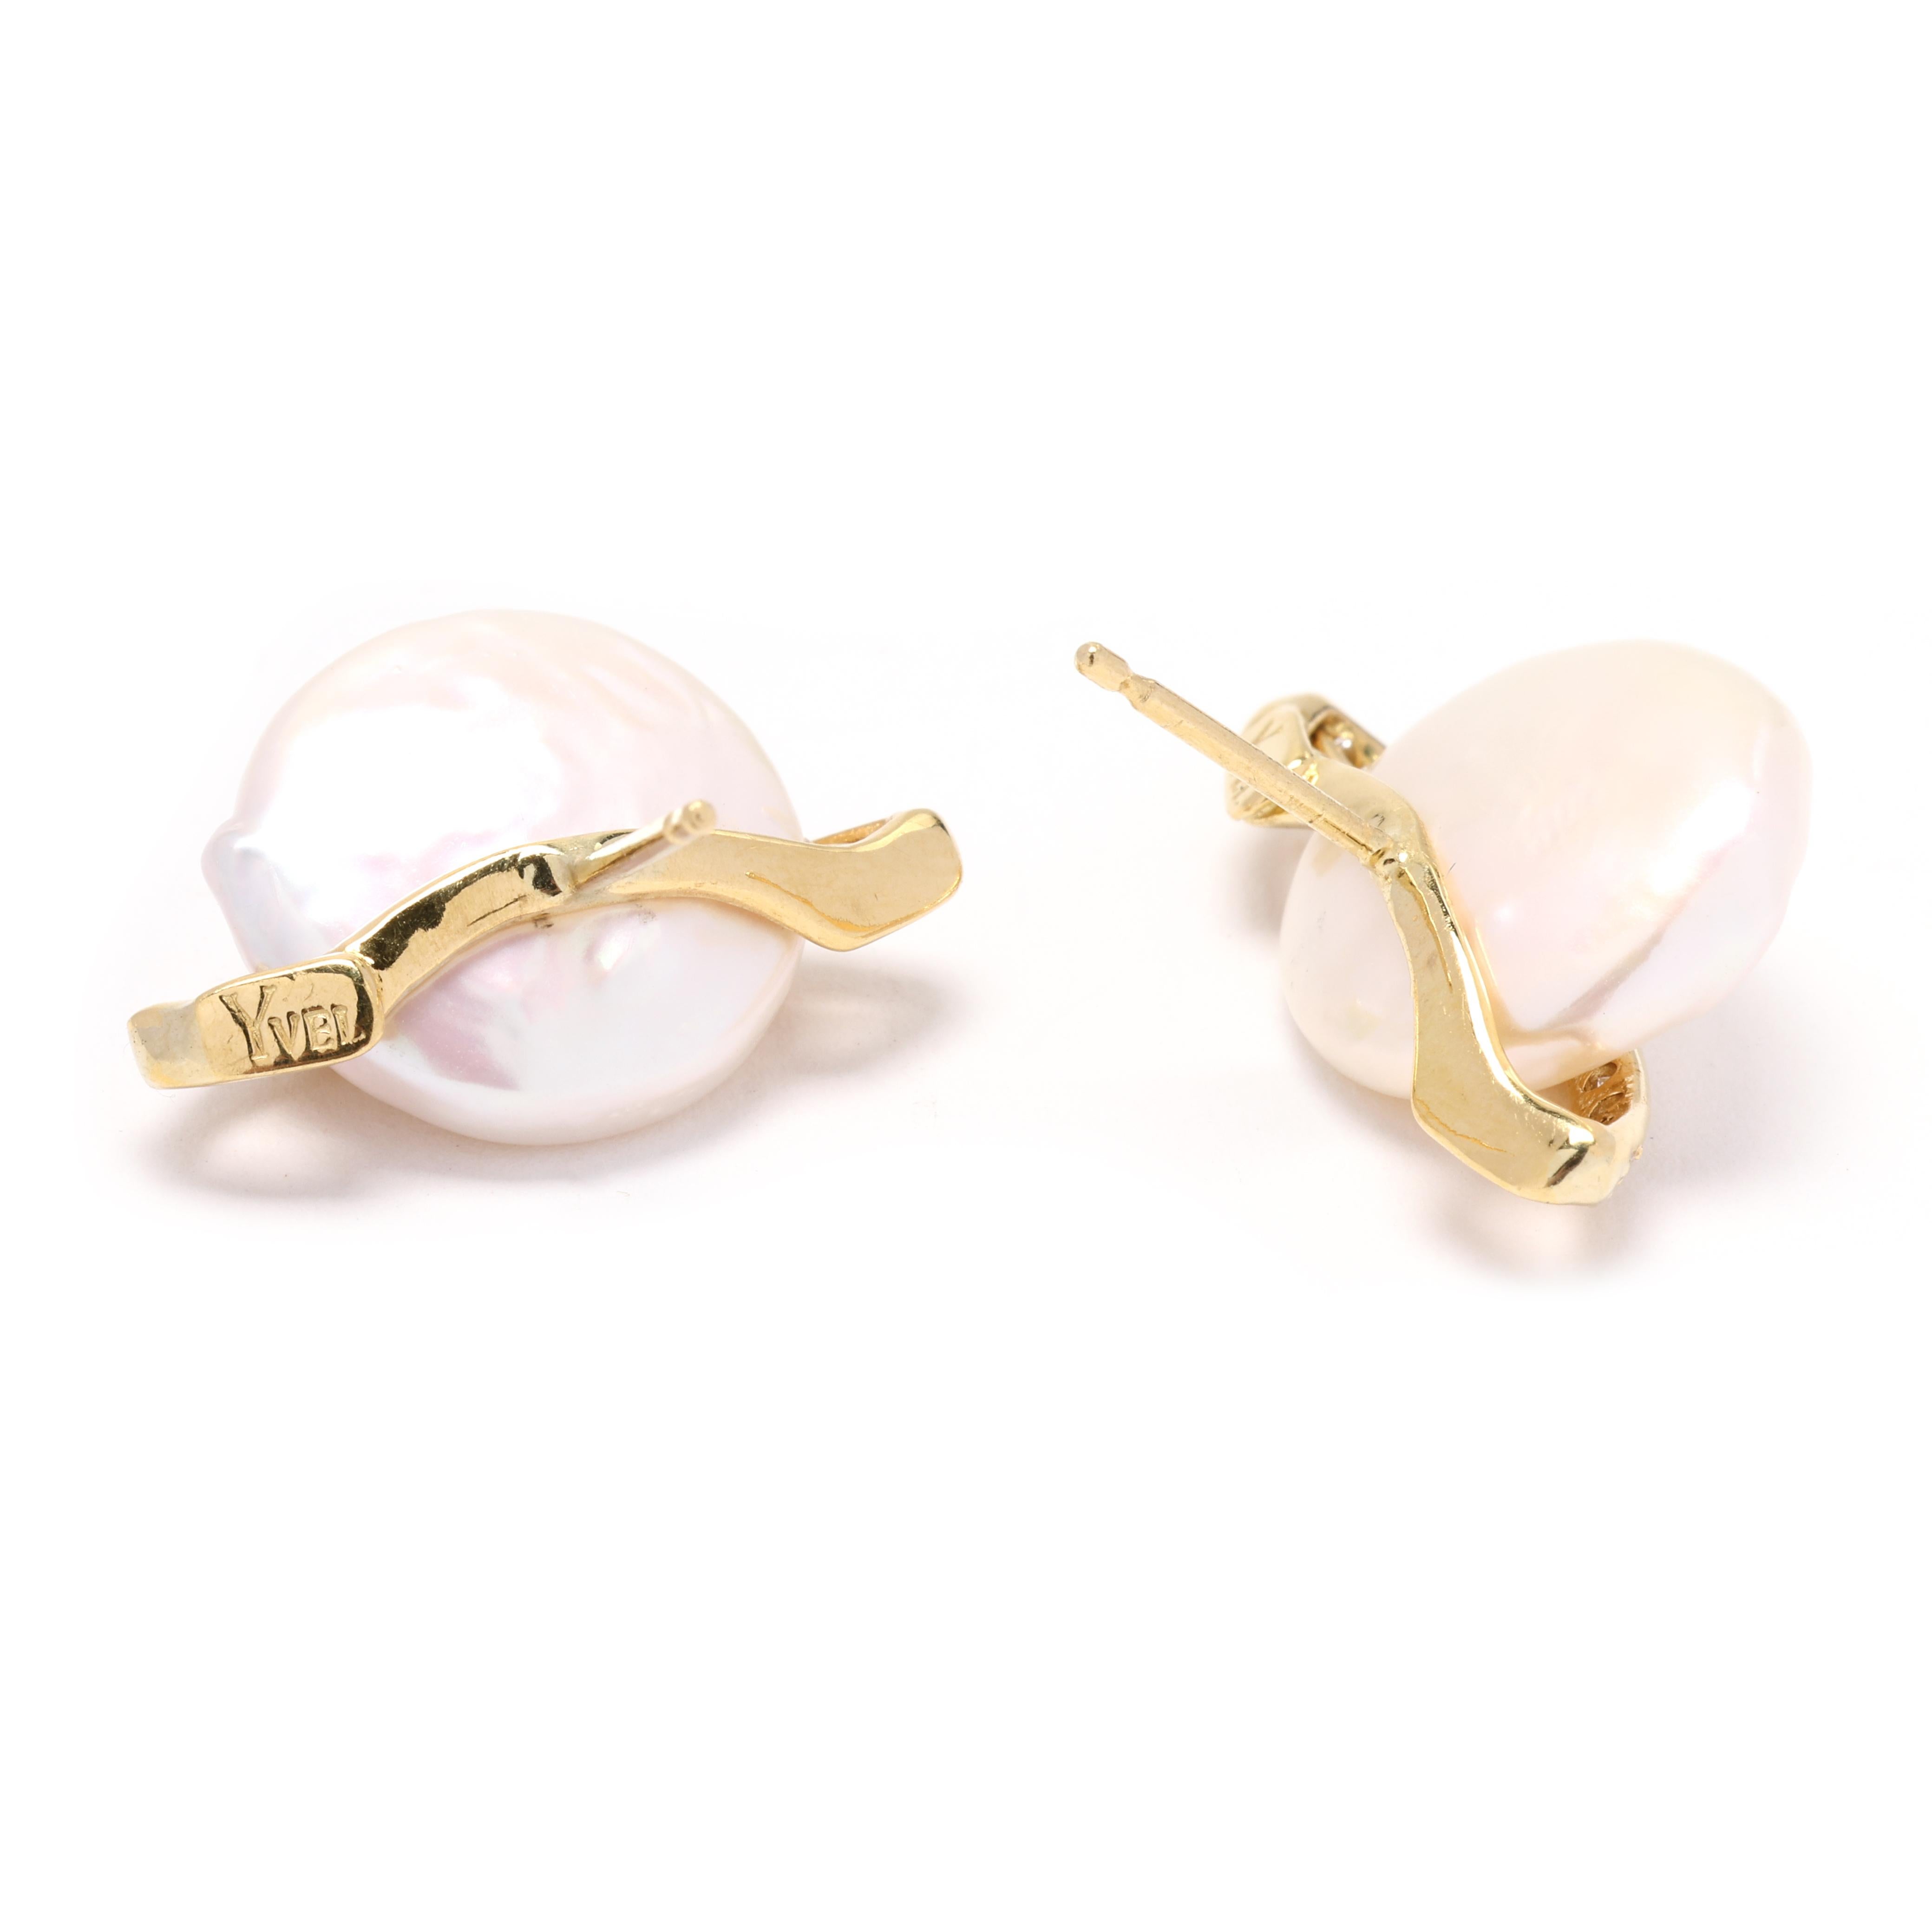 Ces magnifiques boucles d'oreilles en diamant et perle de 0,25 carat sont un choix intemporel et élégant pour ajouter une touche de sophistication à n'importe quelle tenue. Fabriquées en or jaune 18 carats, ces boucles d'oreilles présentent de